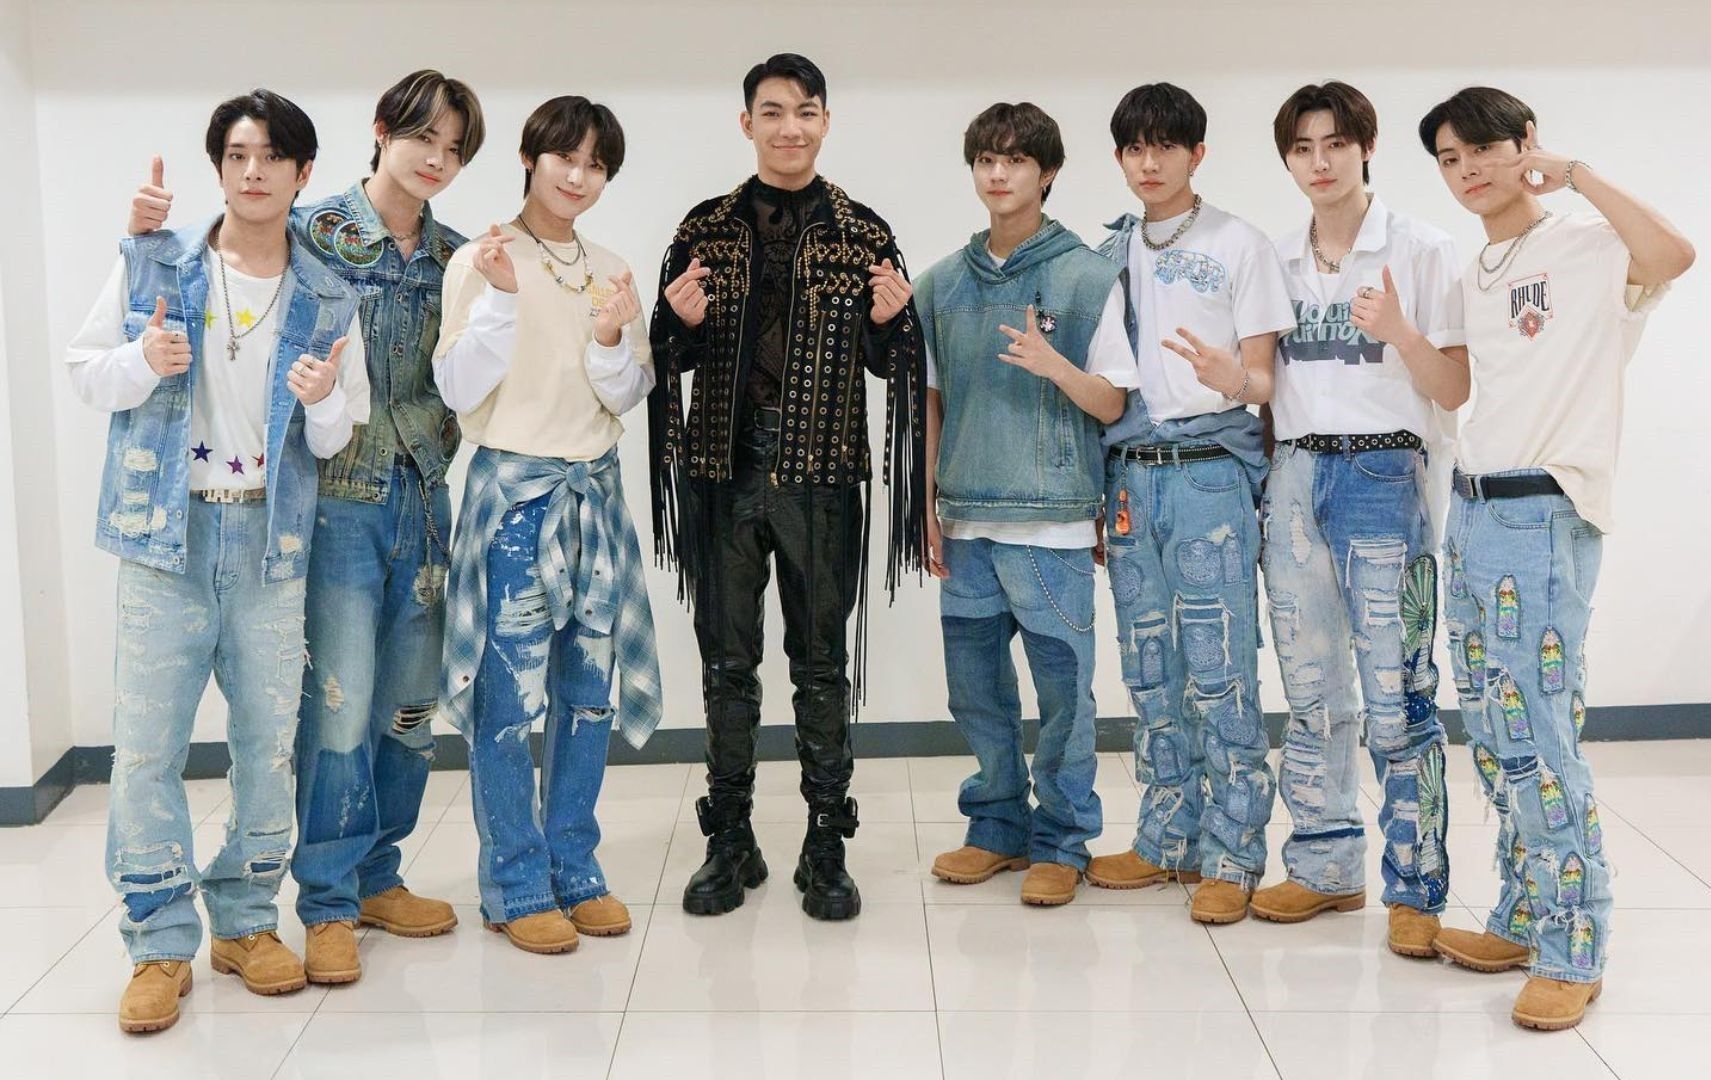 Darren Espanto's height reveal surprises K-pop group ENHYPEN